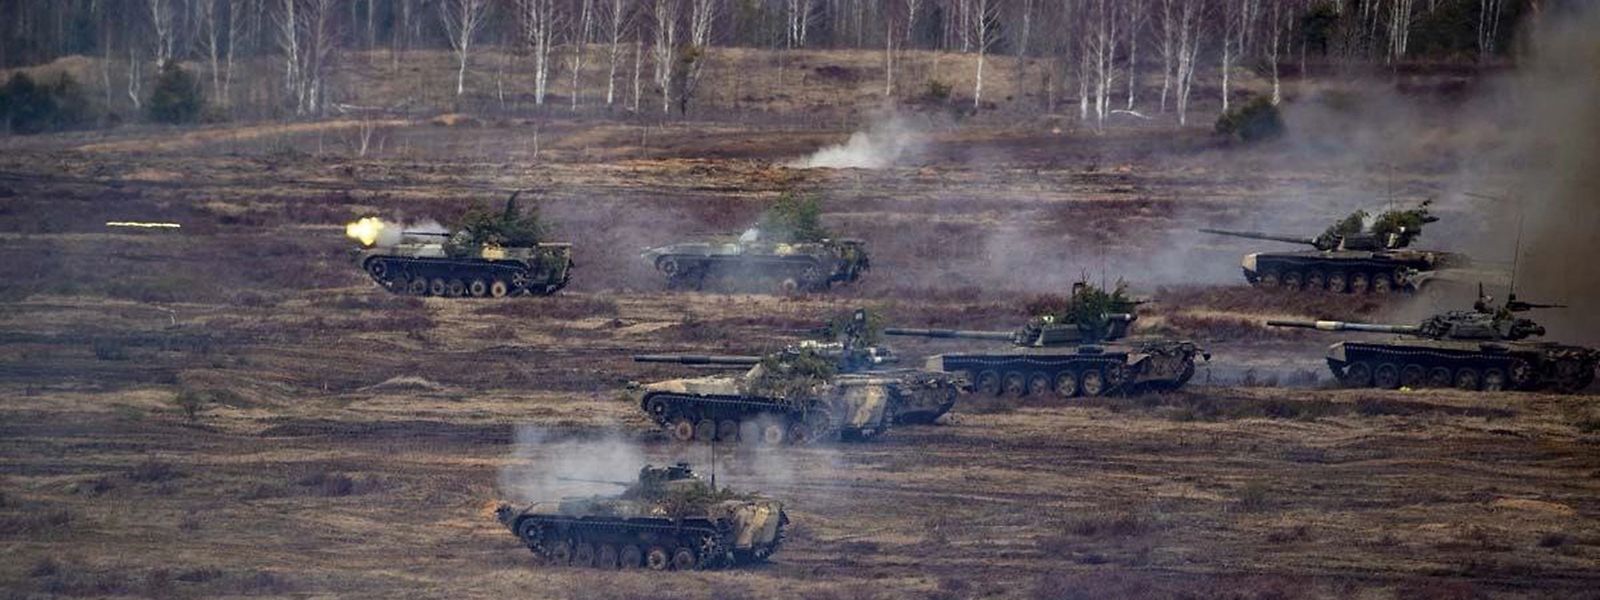 Tanques da Rússia e Bielorrússia em exercícios militares, perto de Brest, na Bielorrússia, a 21 de fevereiro deste ano.